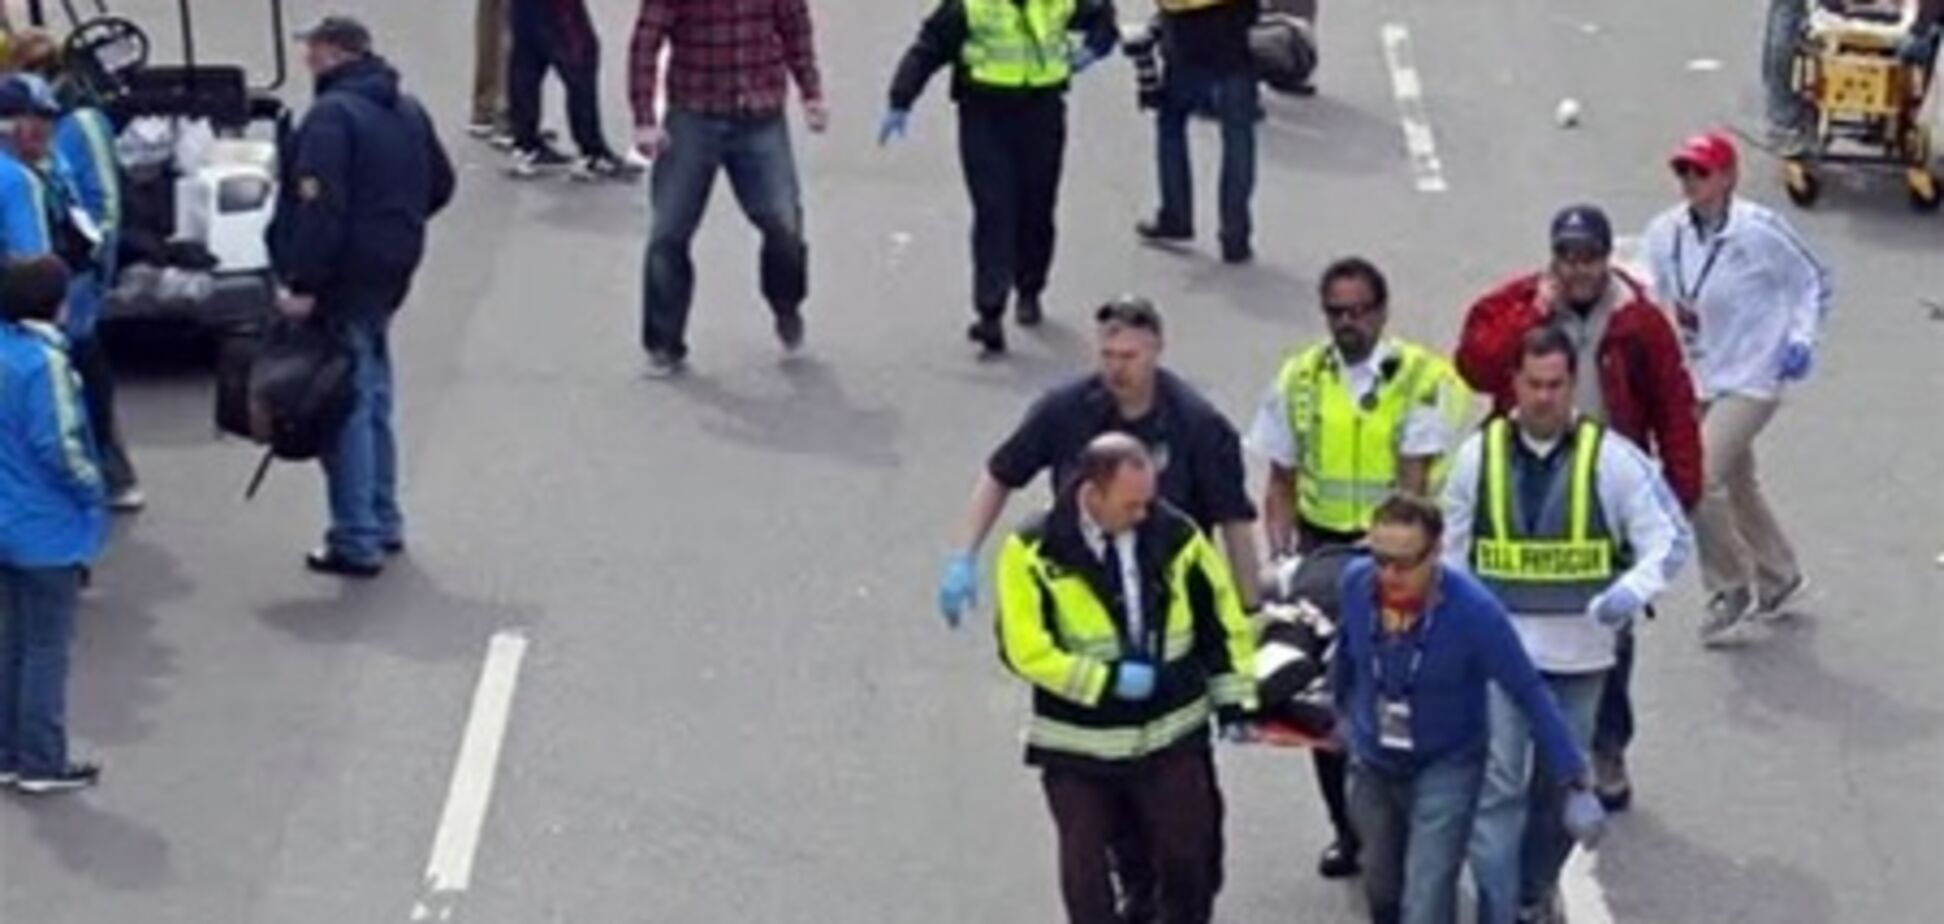 Полиция таки допрашивает подозреваемого в причастности к взрывам в Бостоне